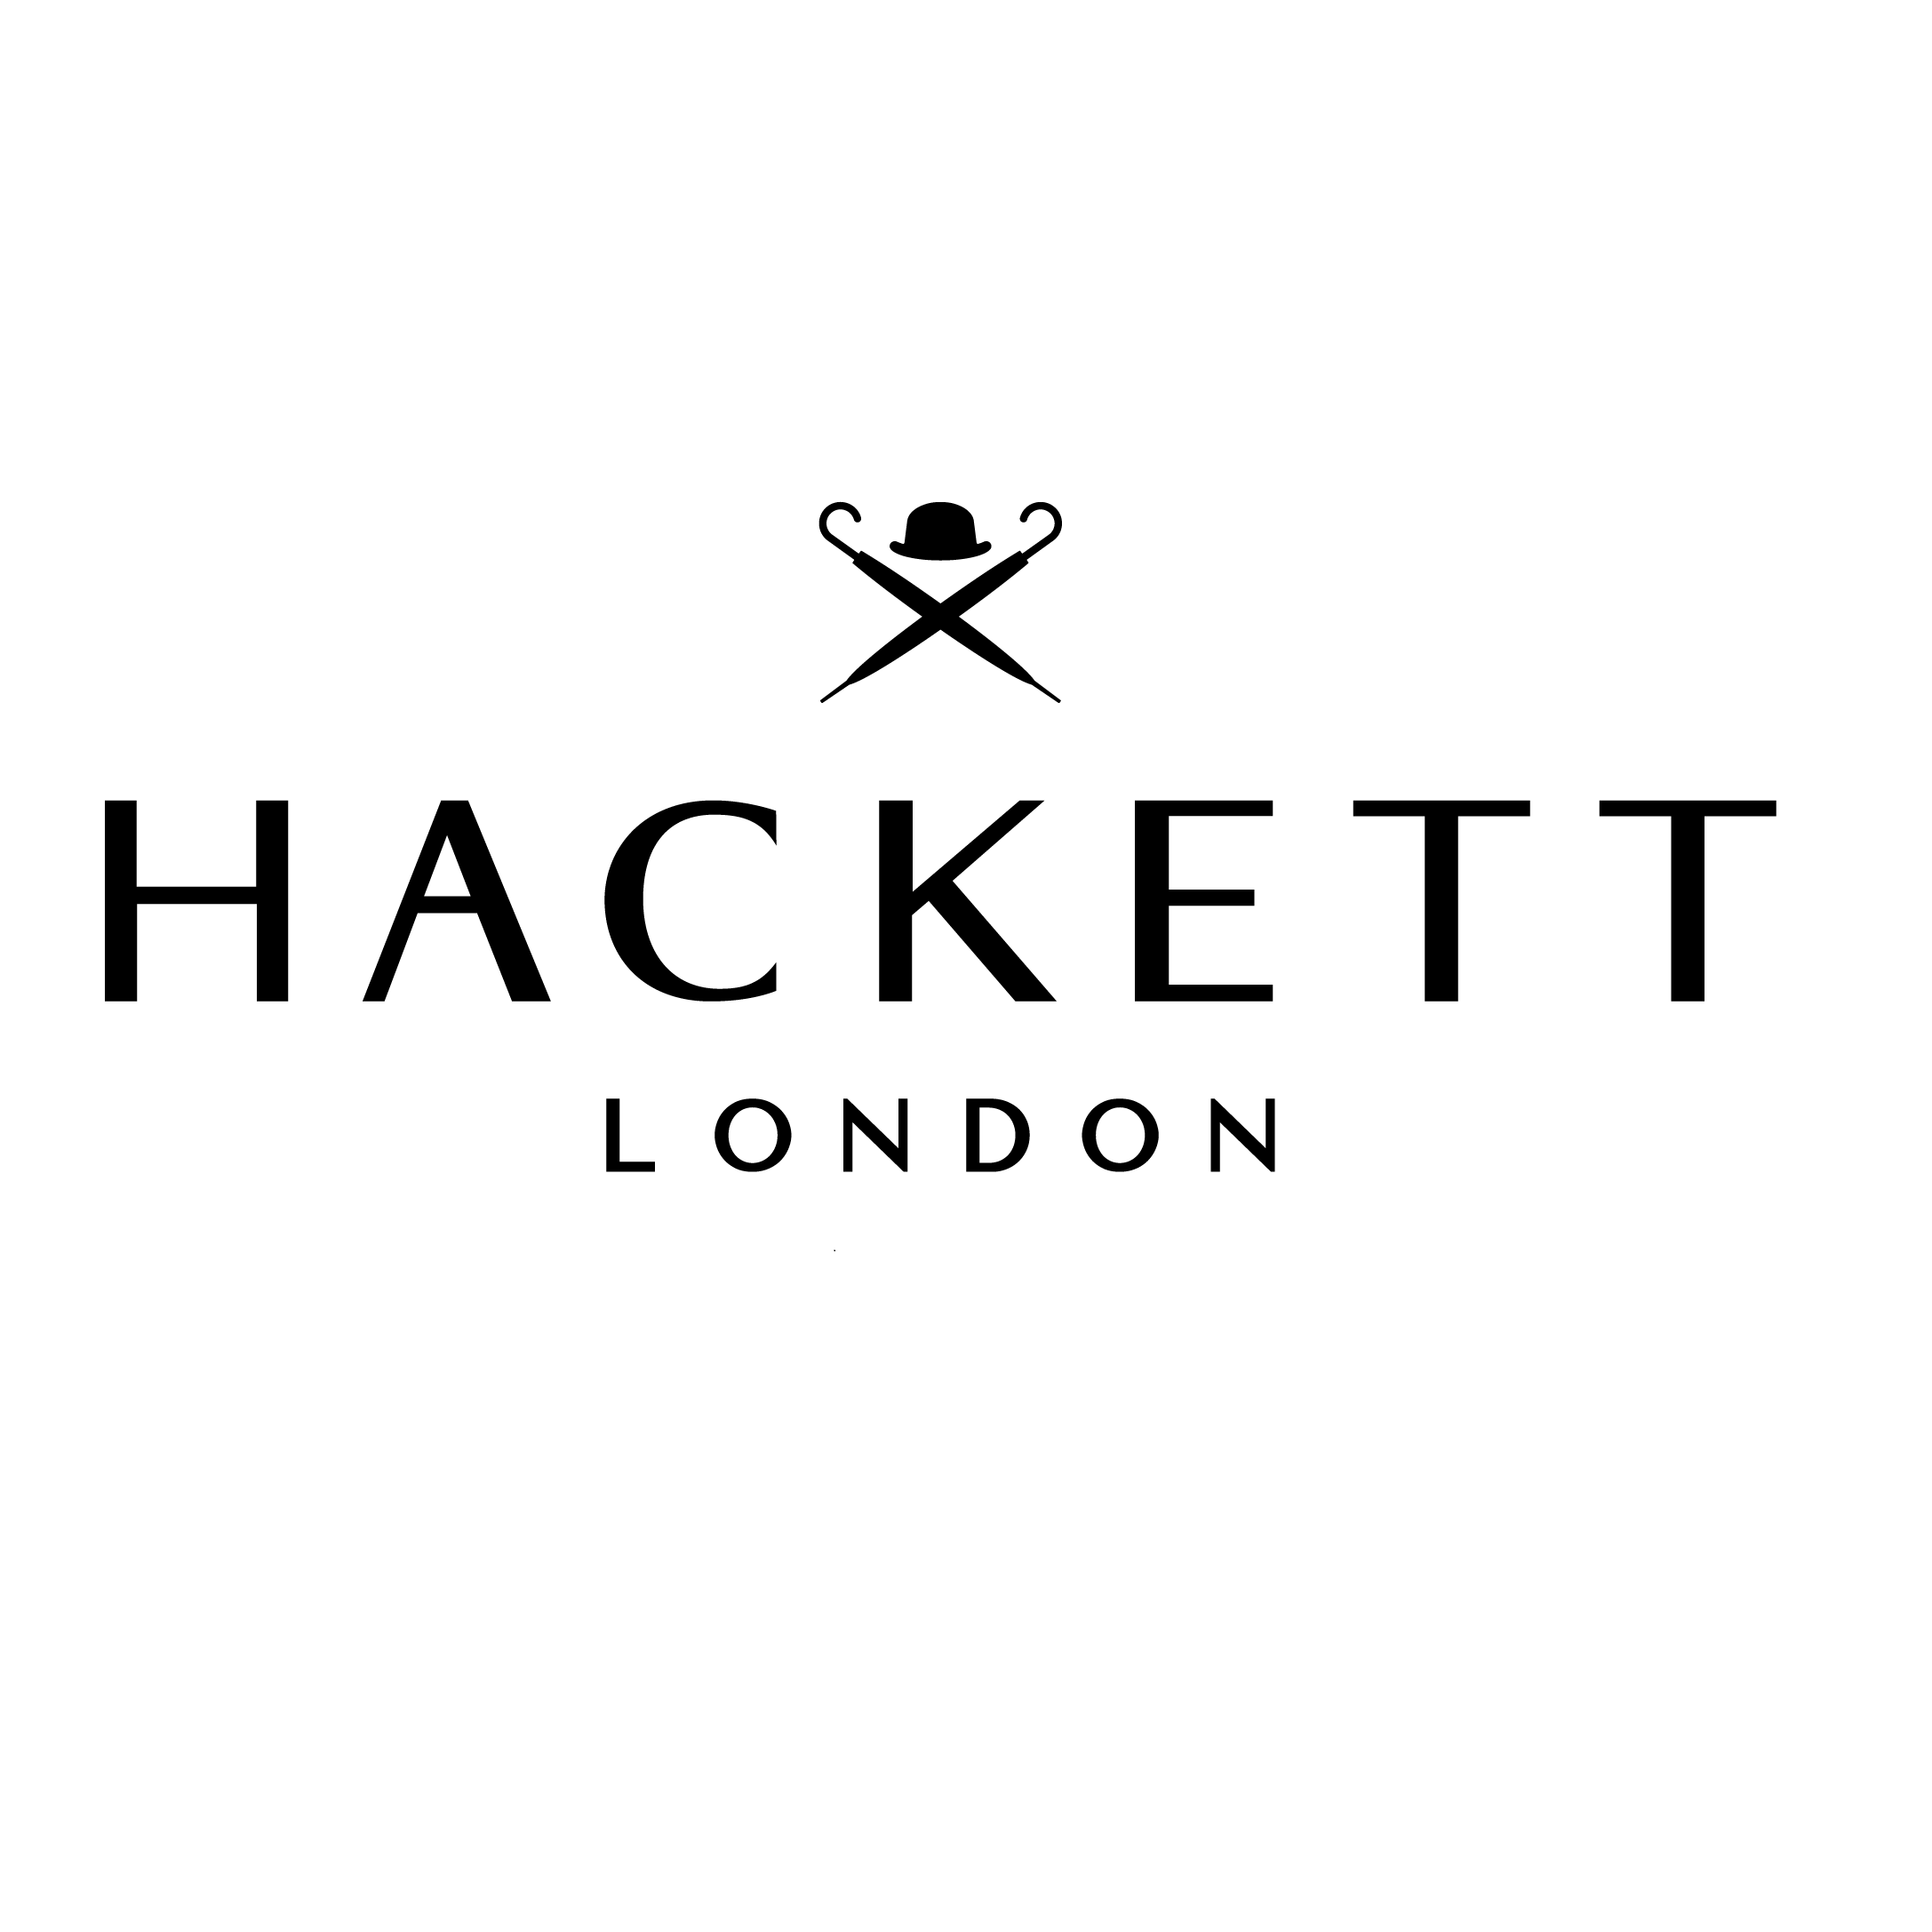 Hackett London Liberdade Lisboa